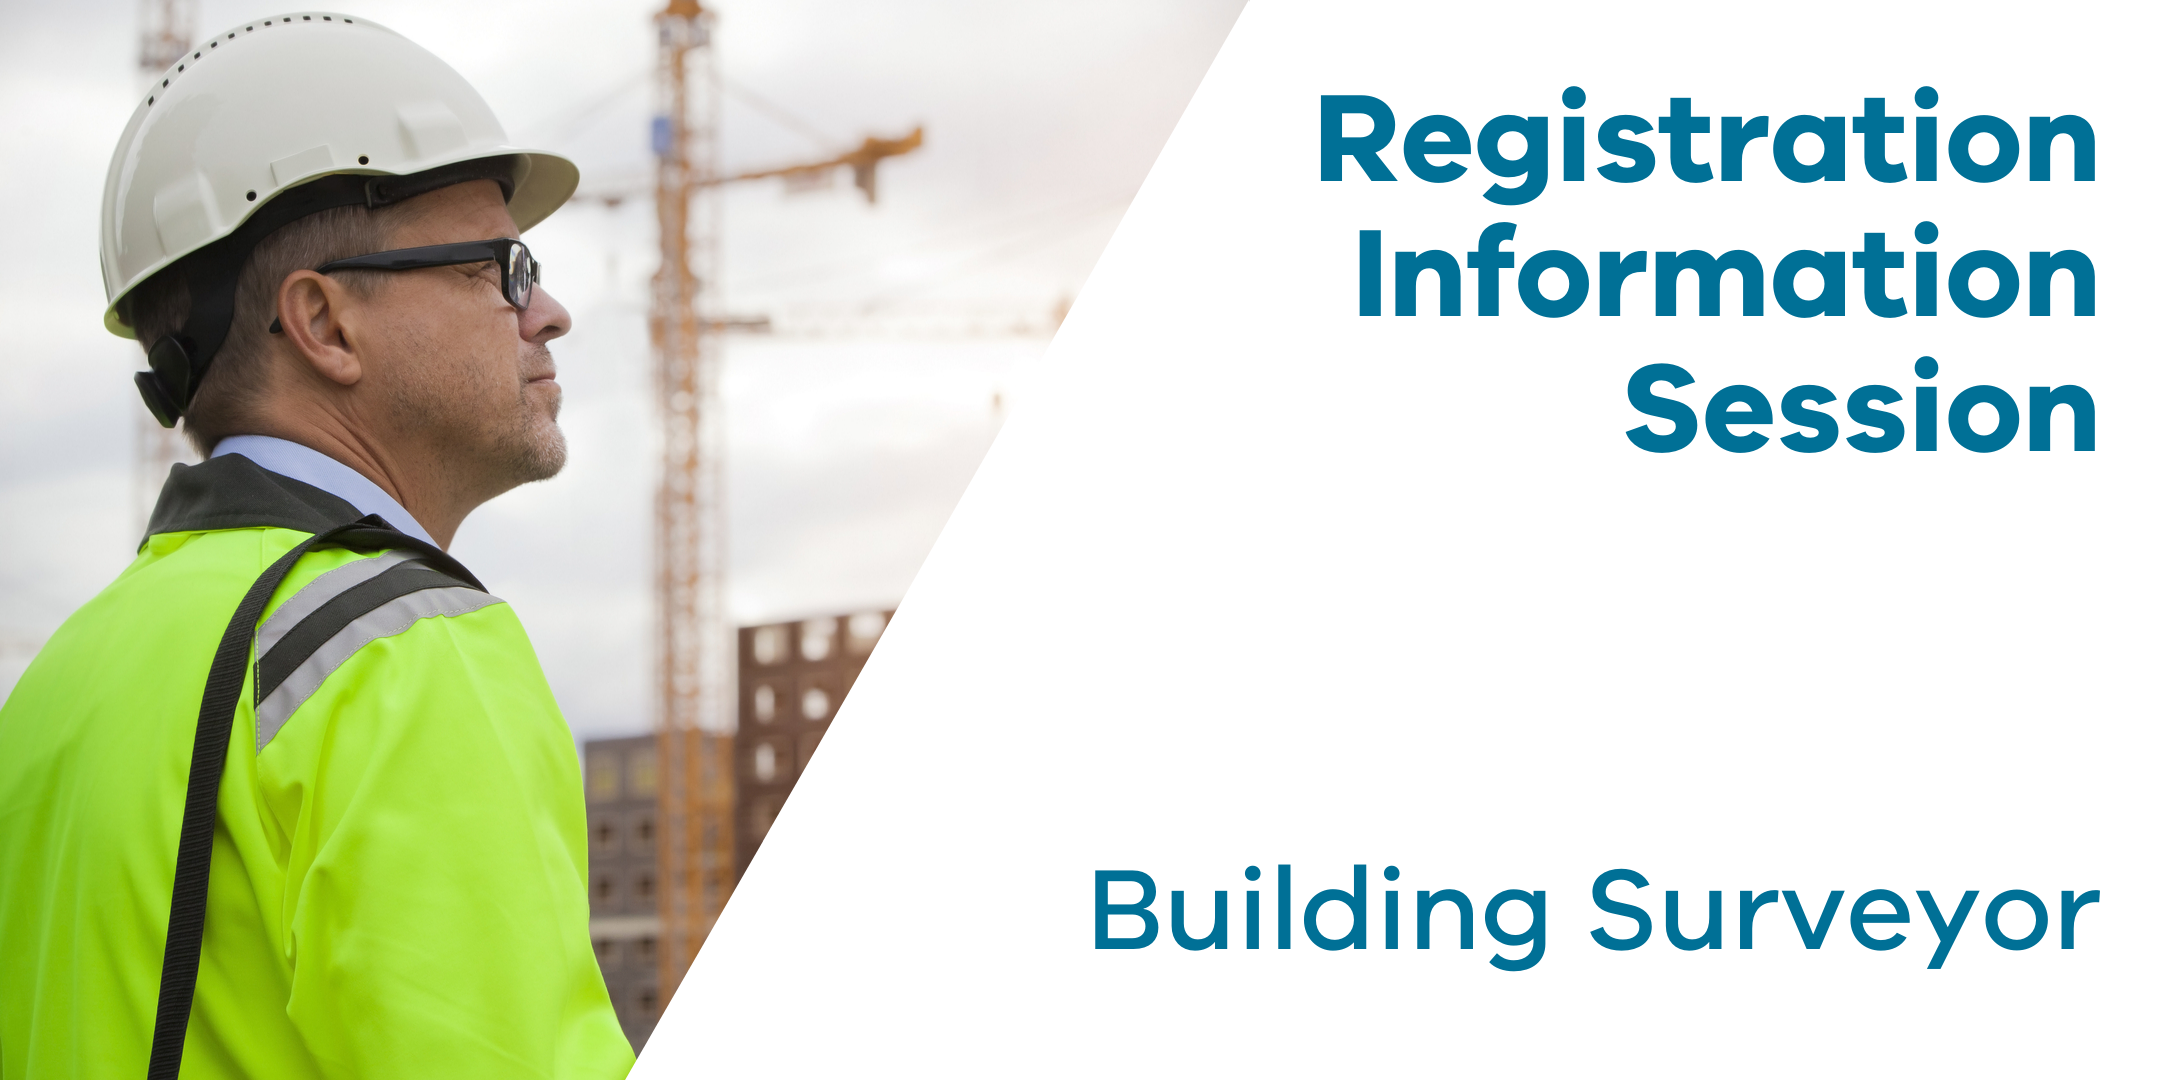 Registration Information Session: Building Surveyor 